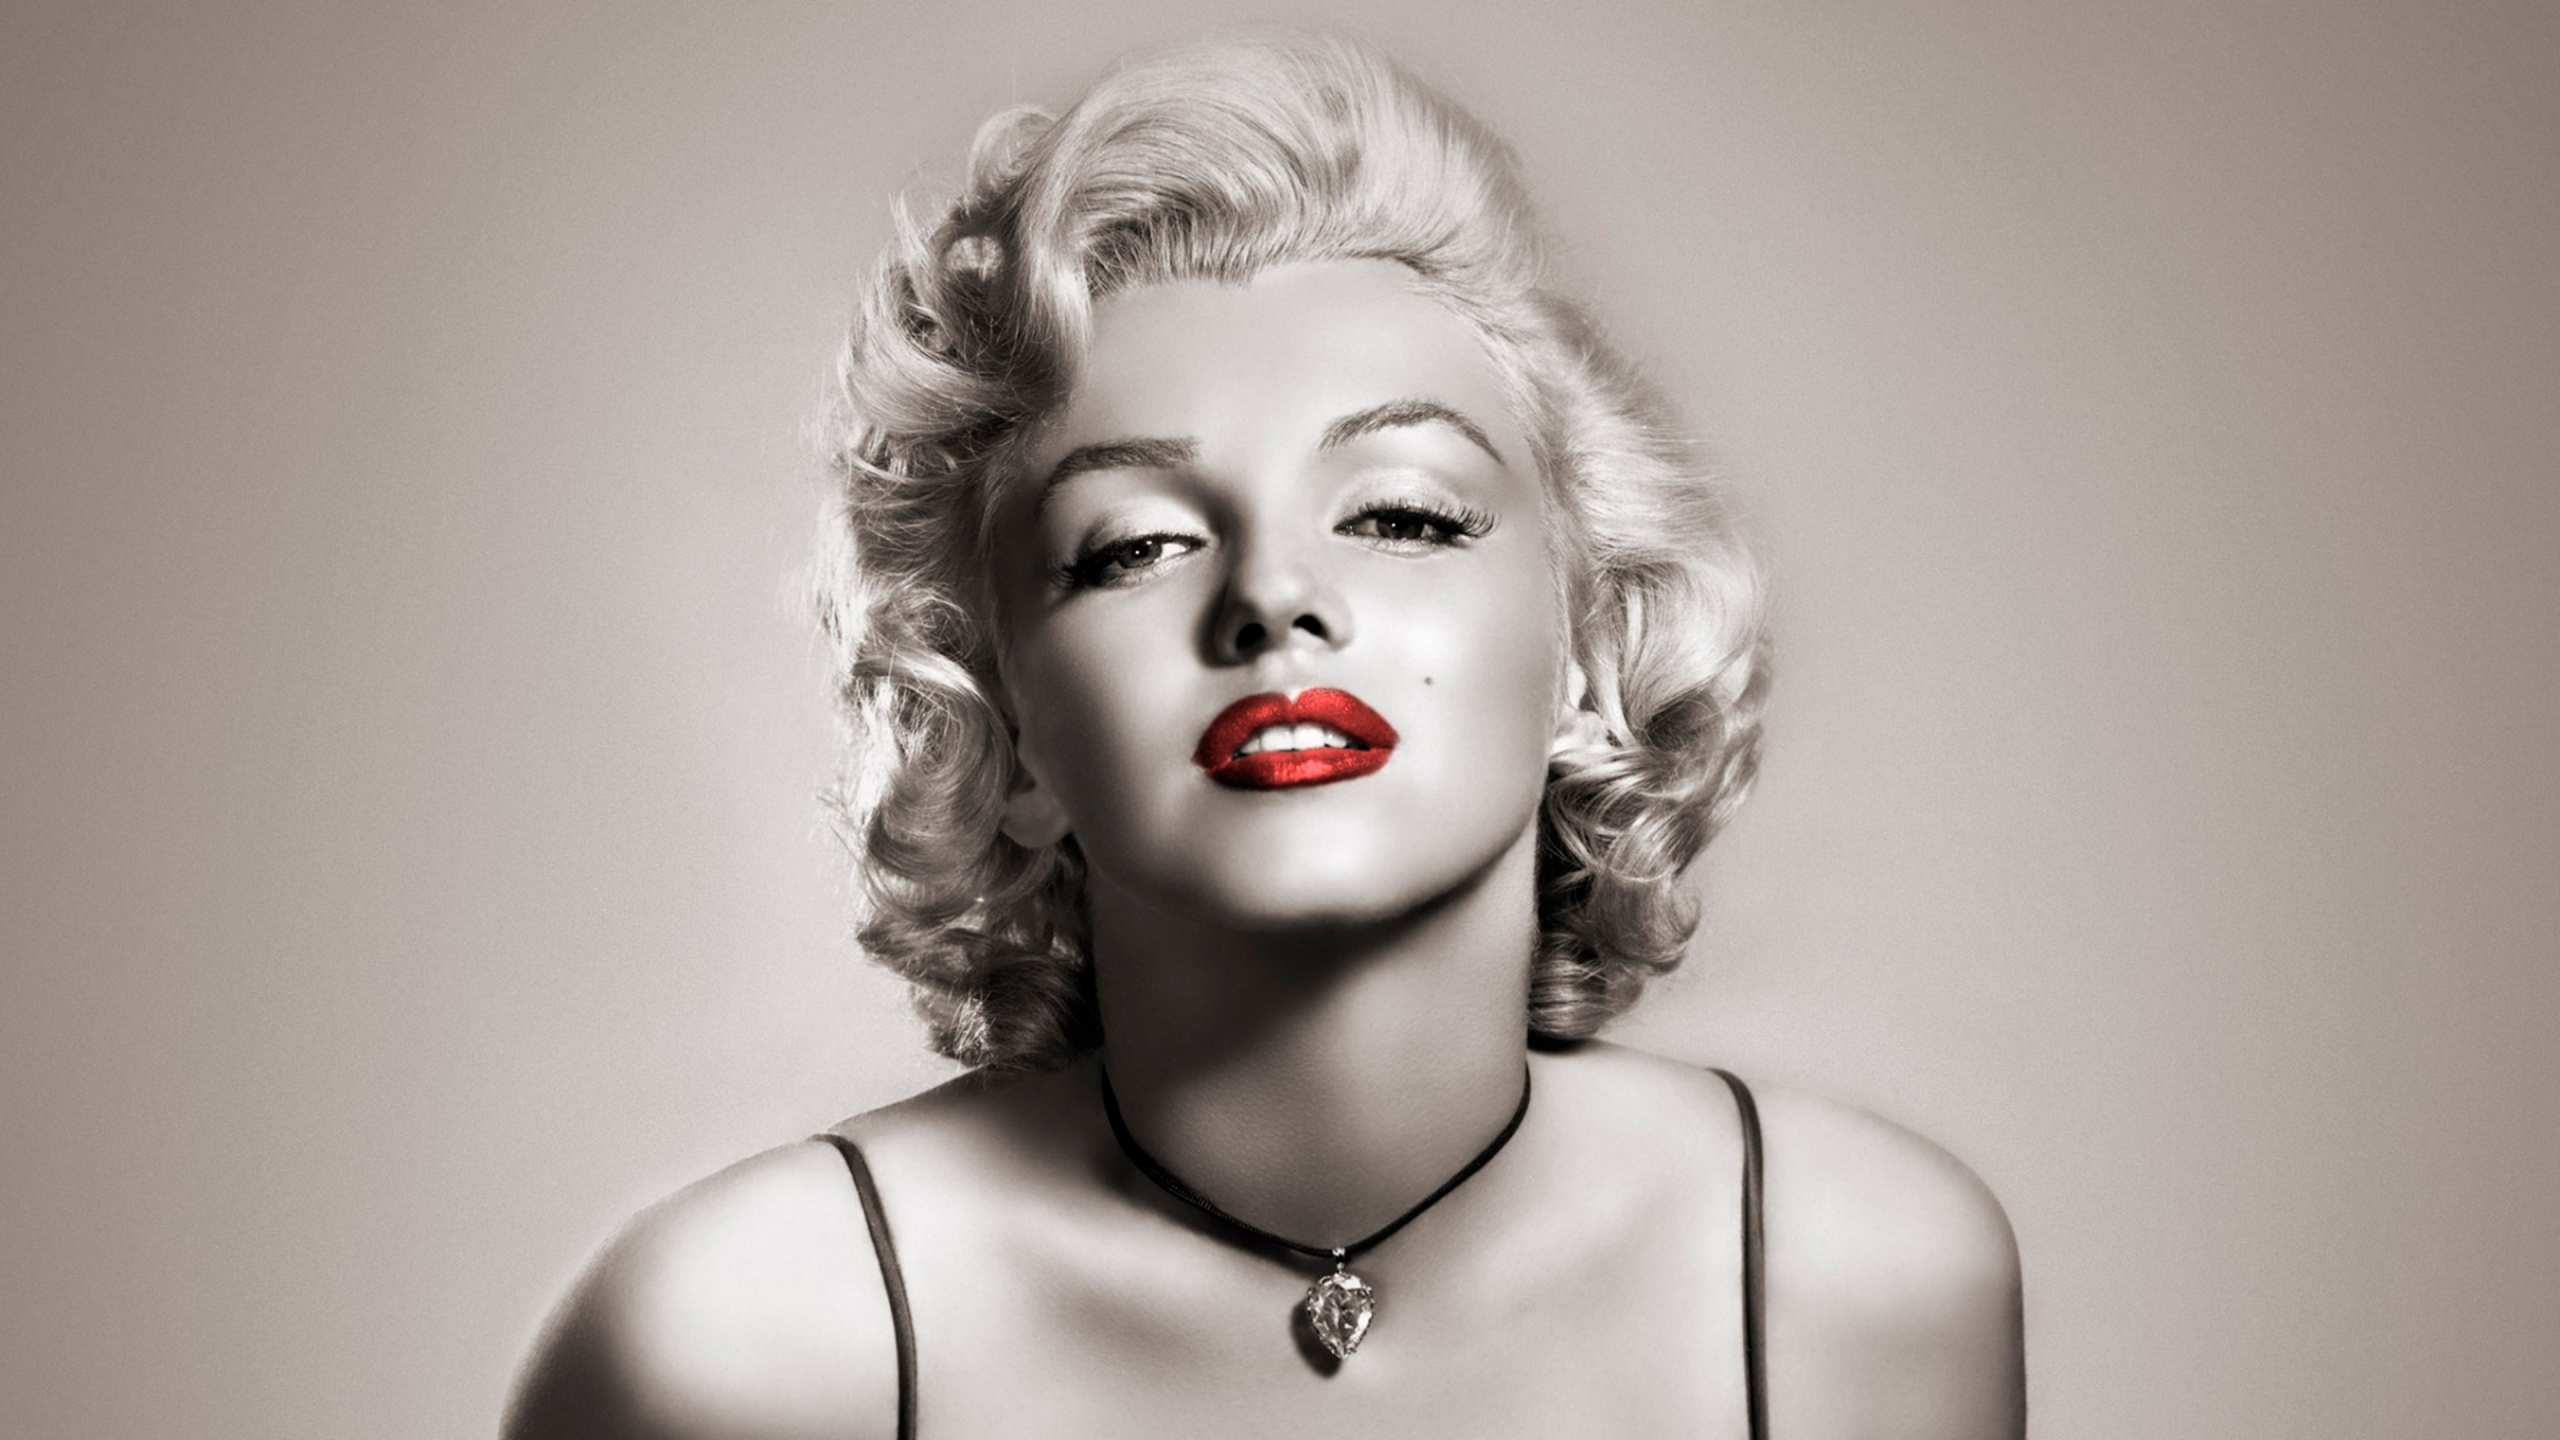 Marilyn Monroe Red Lips for 2560x1440 HDTV resolution